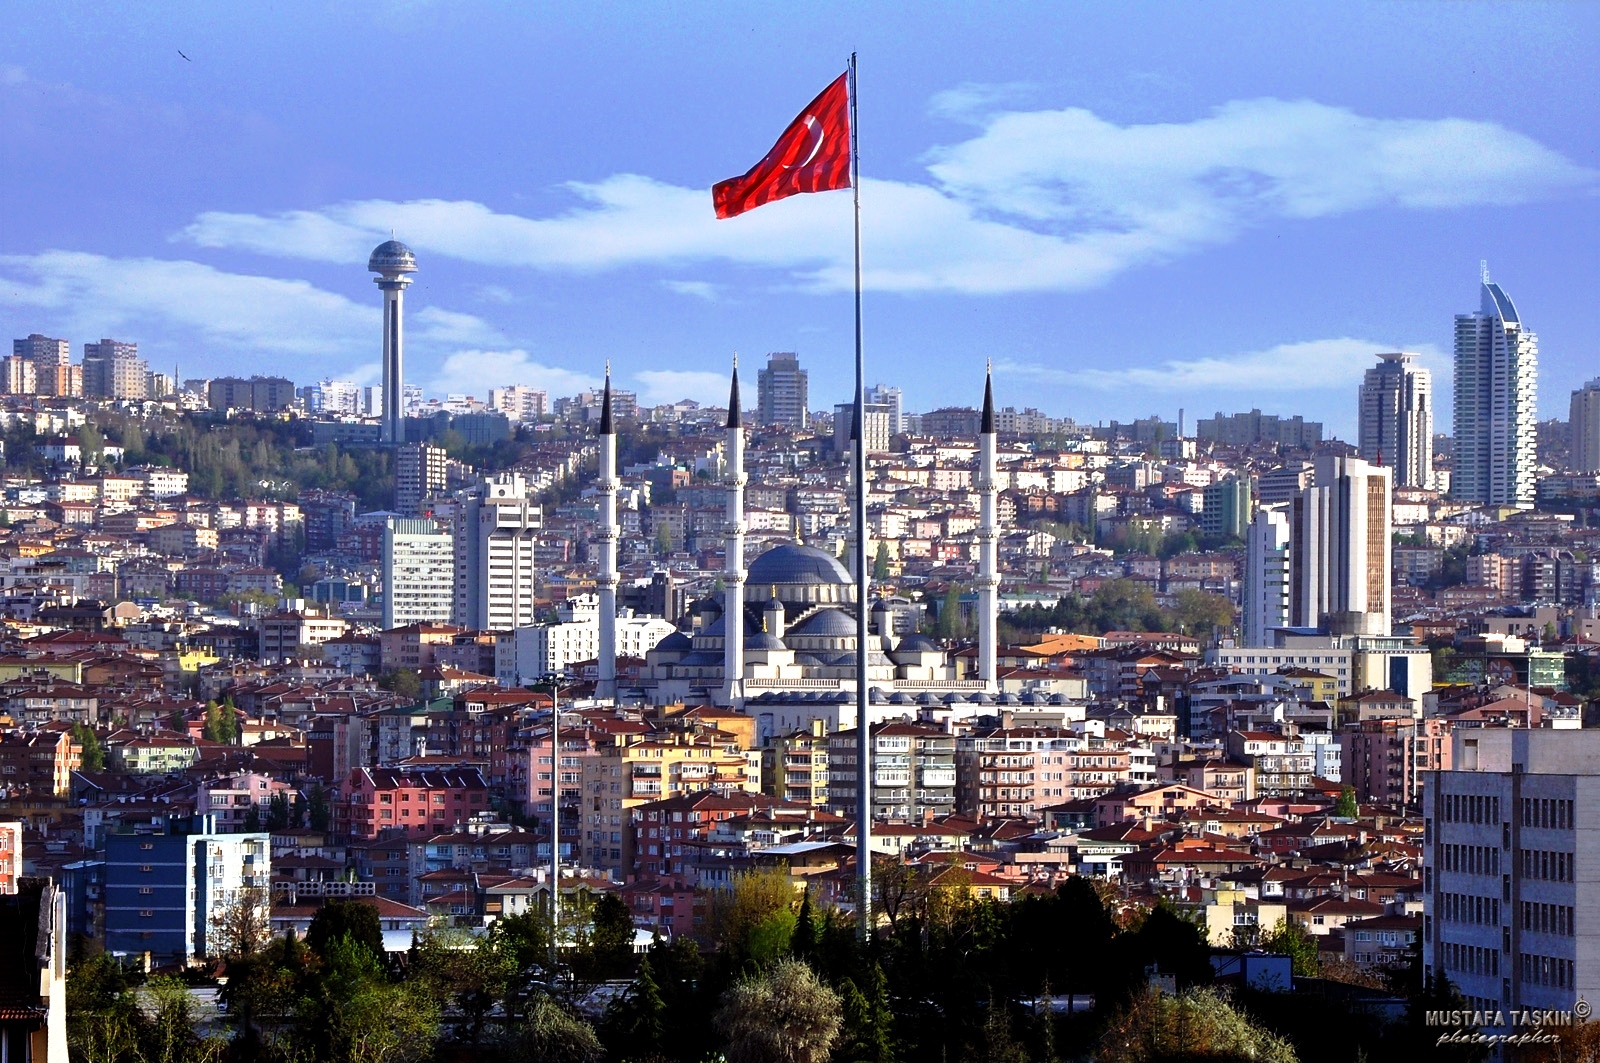 Թուրքիա. Համաձայնագրից ԱՄՆ-ի դուրս գալը անկայունություն և նոր հակամարտություններ կառաջացնի